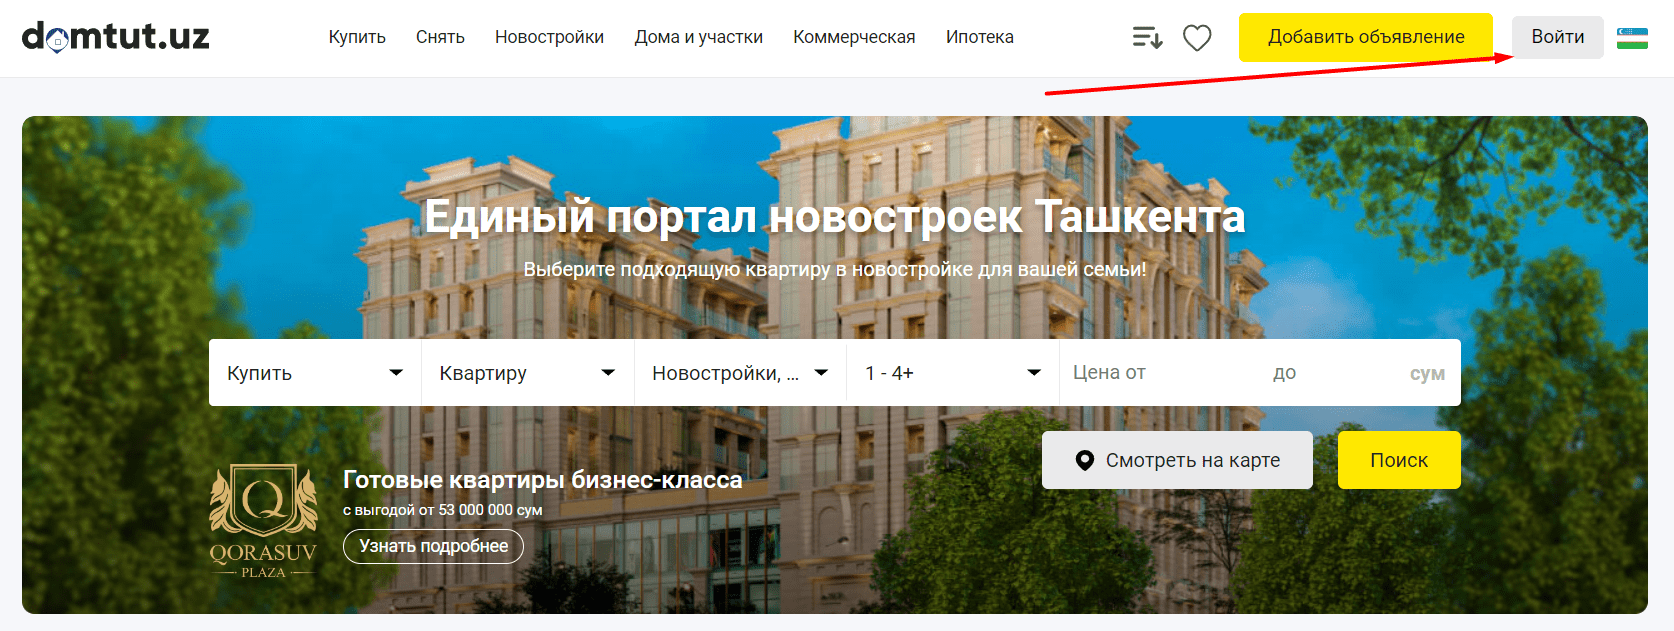 Портал новостроек Ташкента (domtut.uz)